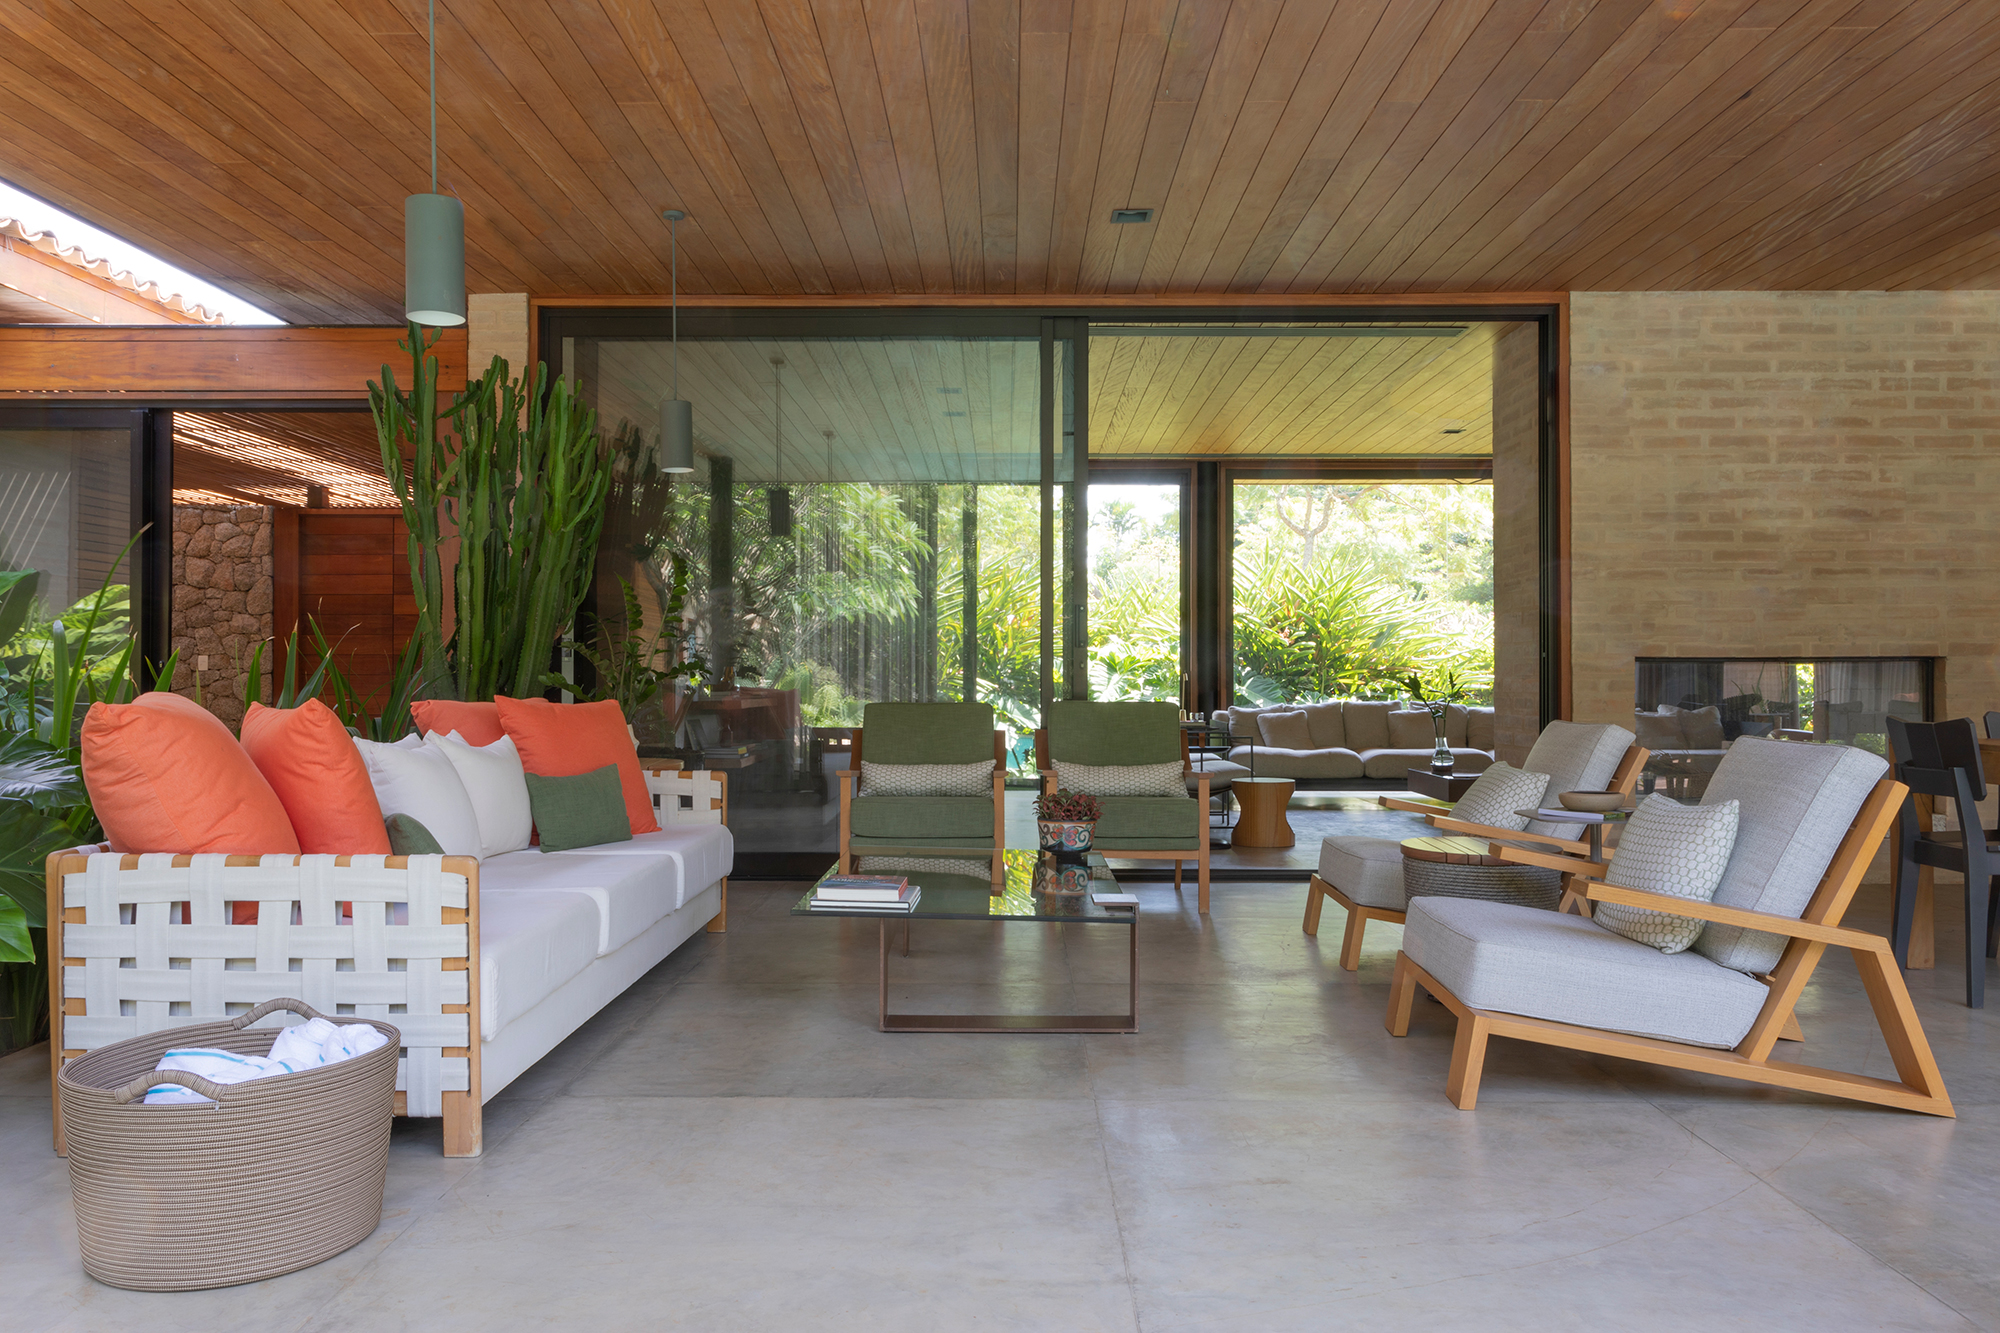 Casa de campo de 818 m² é um verdadeiro refúgio em meio à natureza. Projeto de Daniel Fromer. Na foto, varanda com poltronas e sofá.